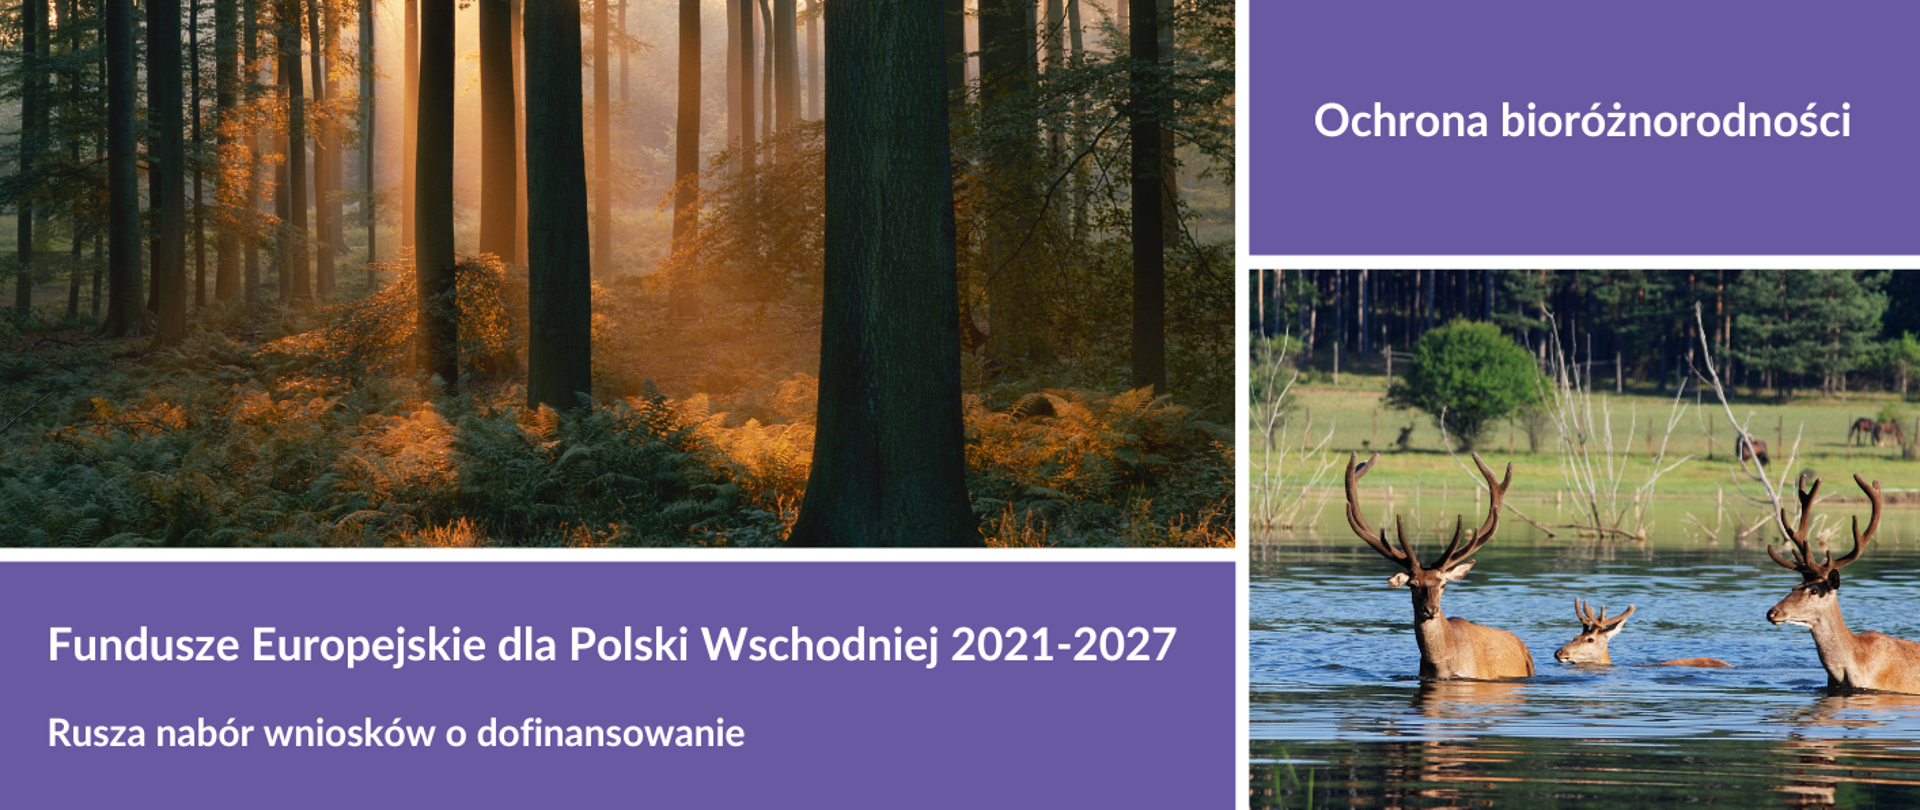 Kolaż dwóch zdjęć przyrodniczych oraz napisy: "Fundusze Europejskie dla Polski Wschodniej 2021-2017, Rusza nabór wniosków o dofinansowanie, Ochrona bioróżnorodności"